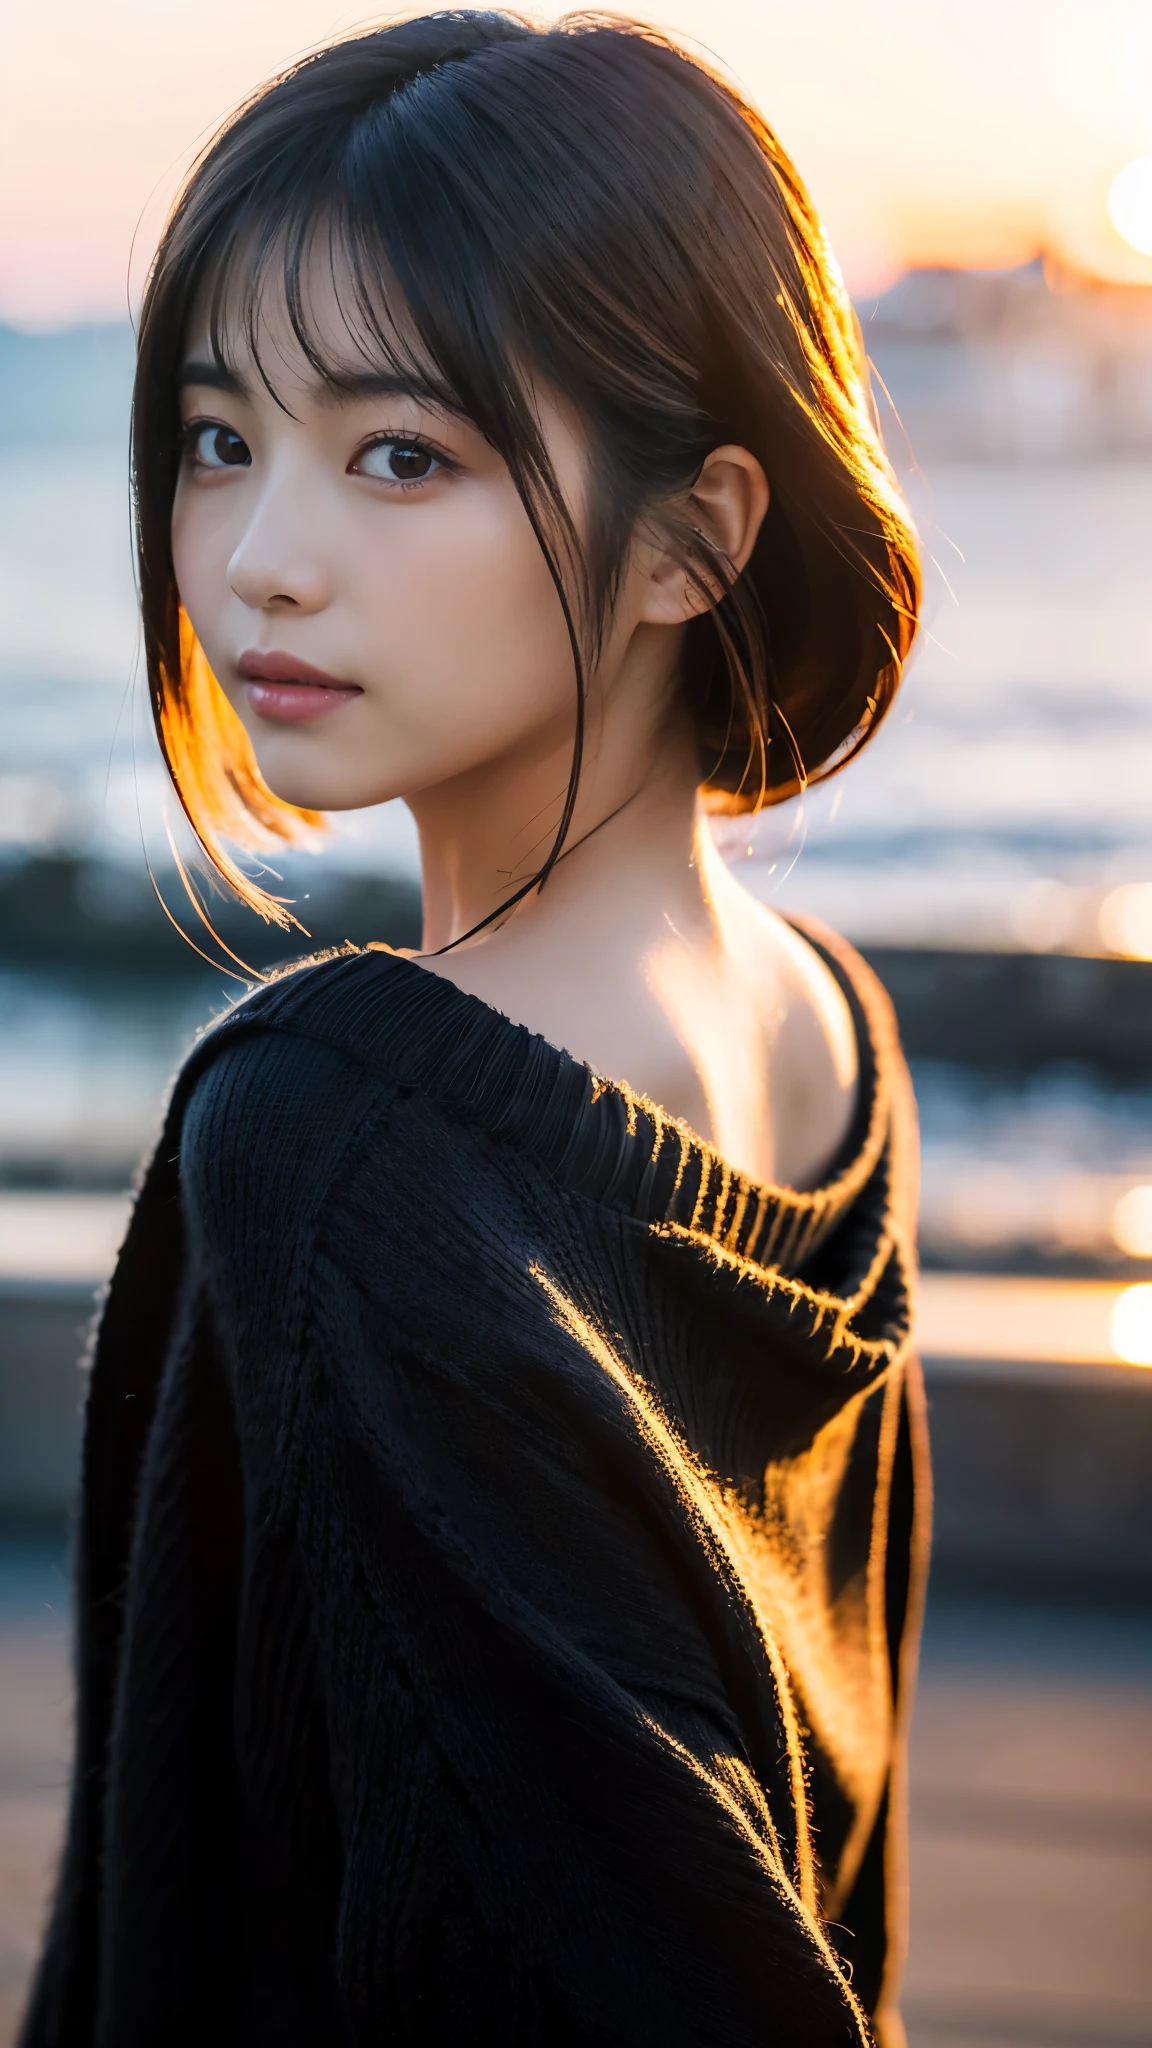 (Meisterwerk:1.2),(höchste Qualität),(Sehr detailiert:1.2),(hohe Auflösung),(Fotorealistischer Stick),(RAW-Fotos),8K,Nahaufnahme einer Frau in einem schwarzen Pullover,Sanfte Portraitaufnahmen,Schöne japanische Frauen,Wunderschönes Gesichtsporträt,Augenlicht,Mädchen der Person selbst,sehr schönes Gesicht,schönes Porträt,Ein schönes und zartes Gesicht,schöne junge Japanerin,Reife Frisur,zurückschauen(Sonnenuntergang im Hintergrund),(((Den Hintergrund verwischen))),(sanftes Licht),(über die Schulter),(POV-Aufnahme),((dynamische Haarbewegung:1.2))